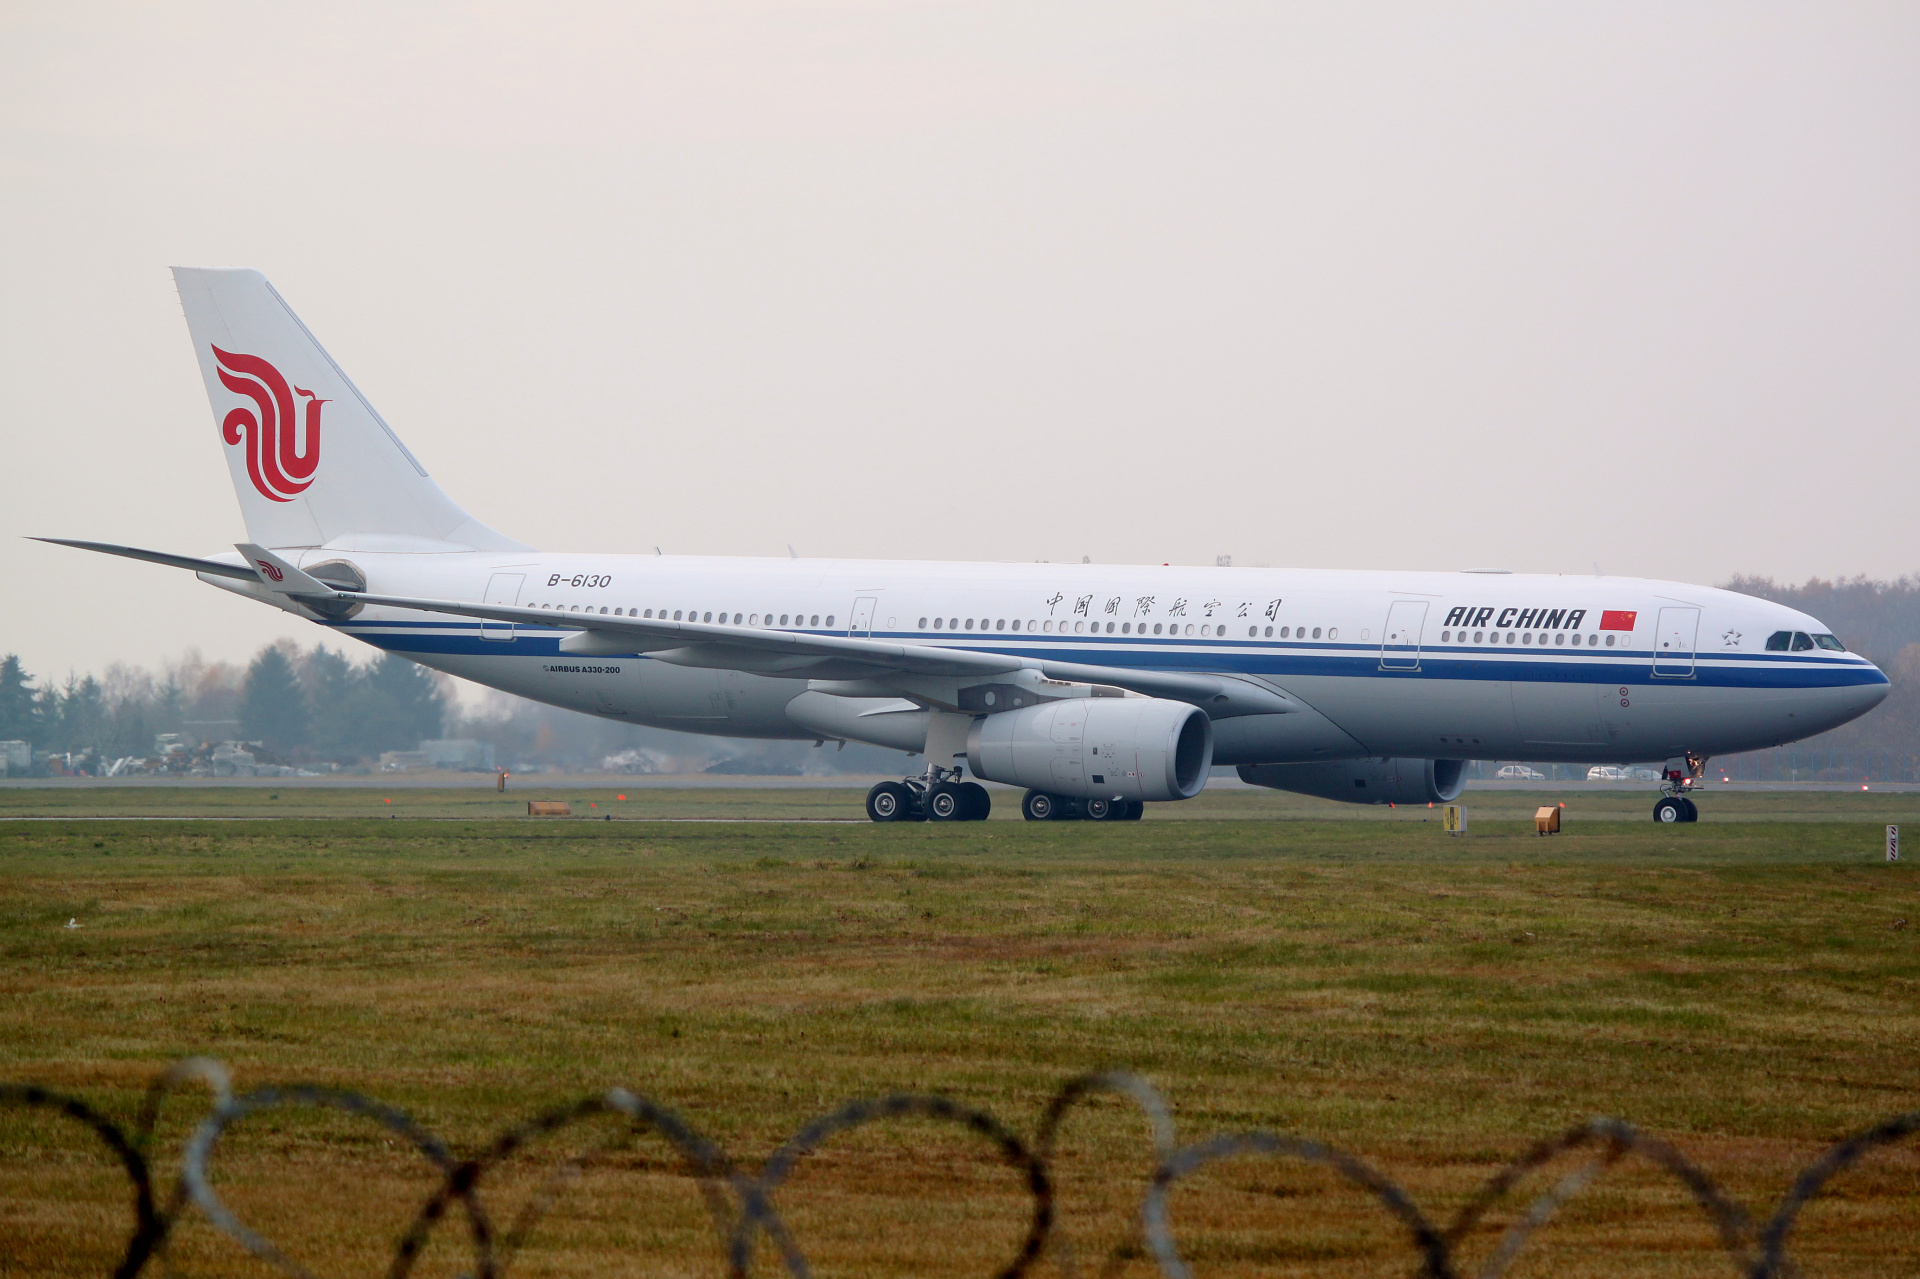 B-6130 (Aircraft » EPWA Spotting » Airbus A330-200 » Air China)